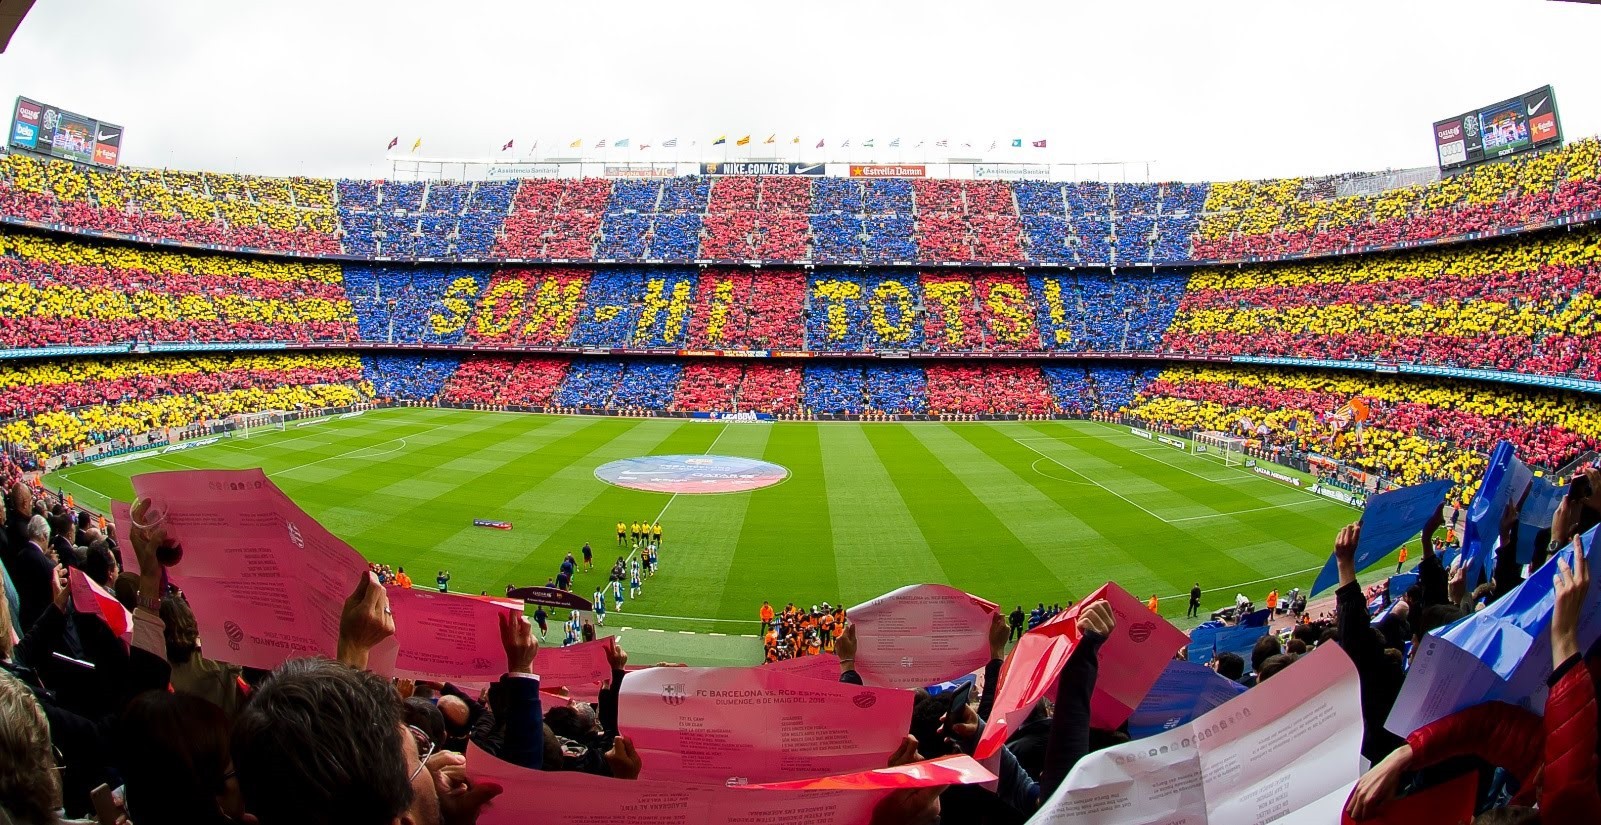 El Clasico: Barca triển khai kế hoạch cho màn tiếp đón Real trên khán đài - Ảnh 1.